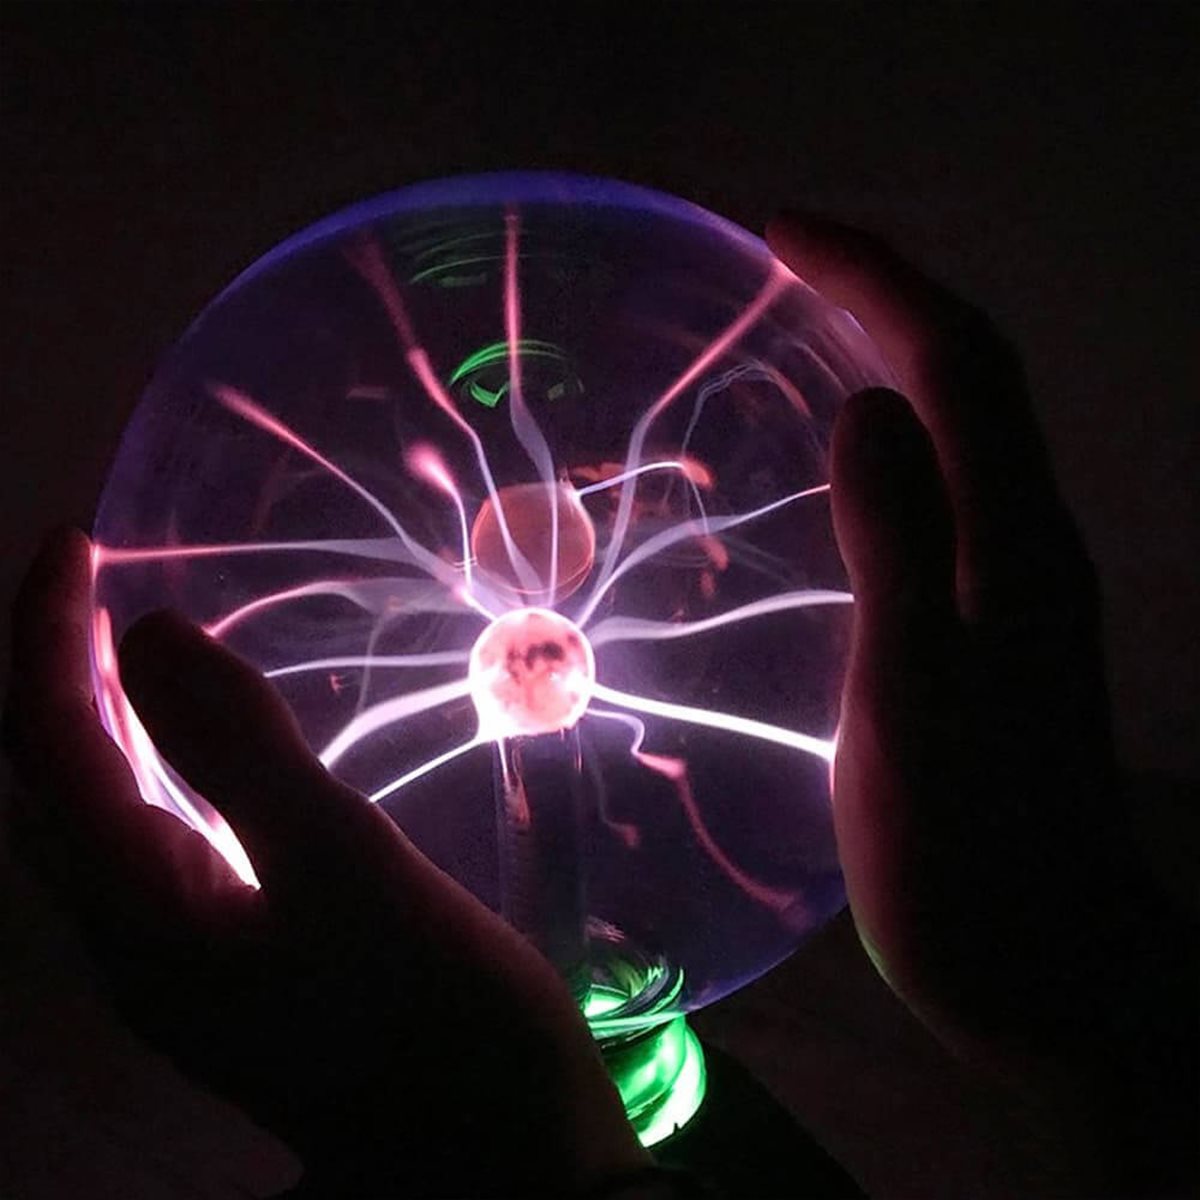 Boule de plasma haute tension / boule de plasma - Éclairs magiques dans une  boule de verre